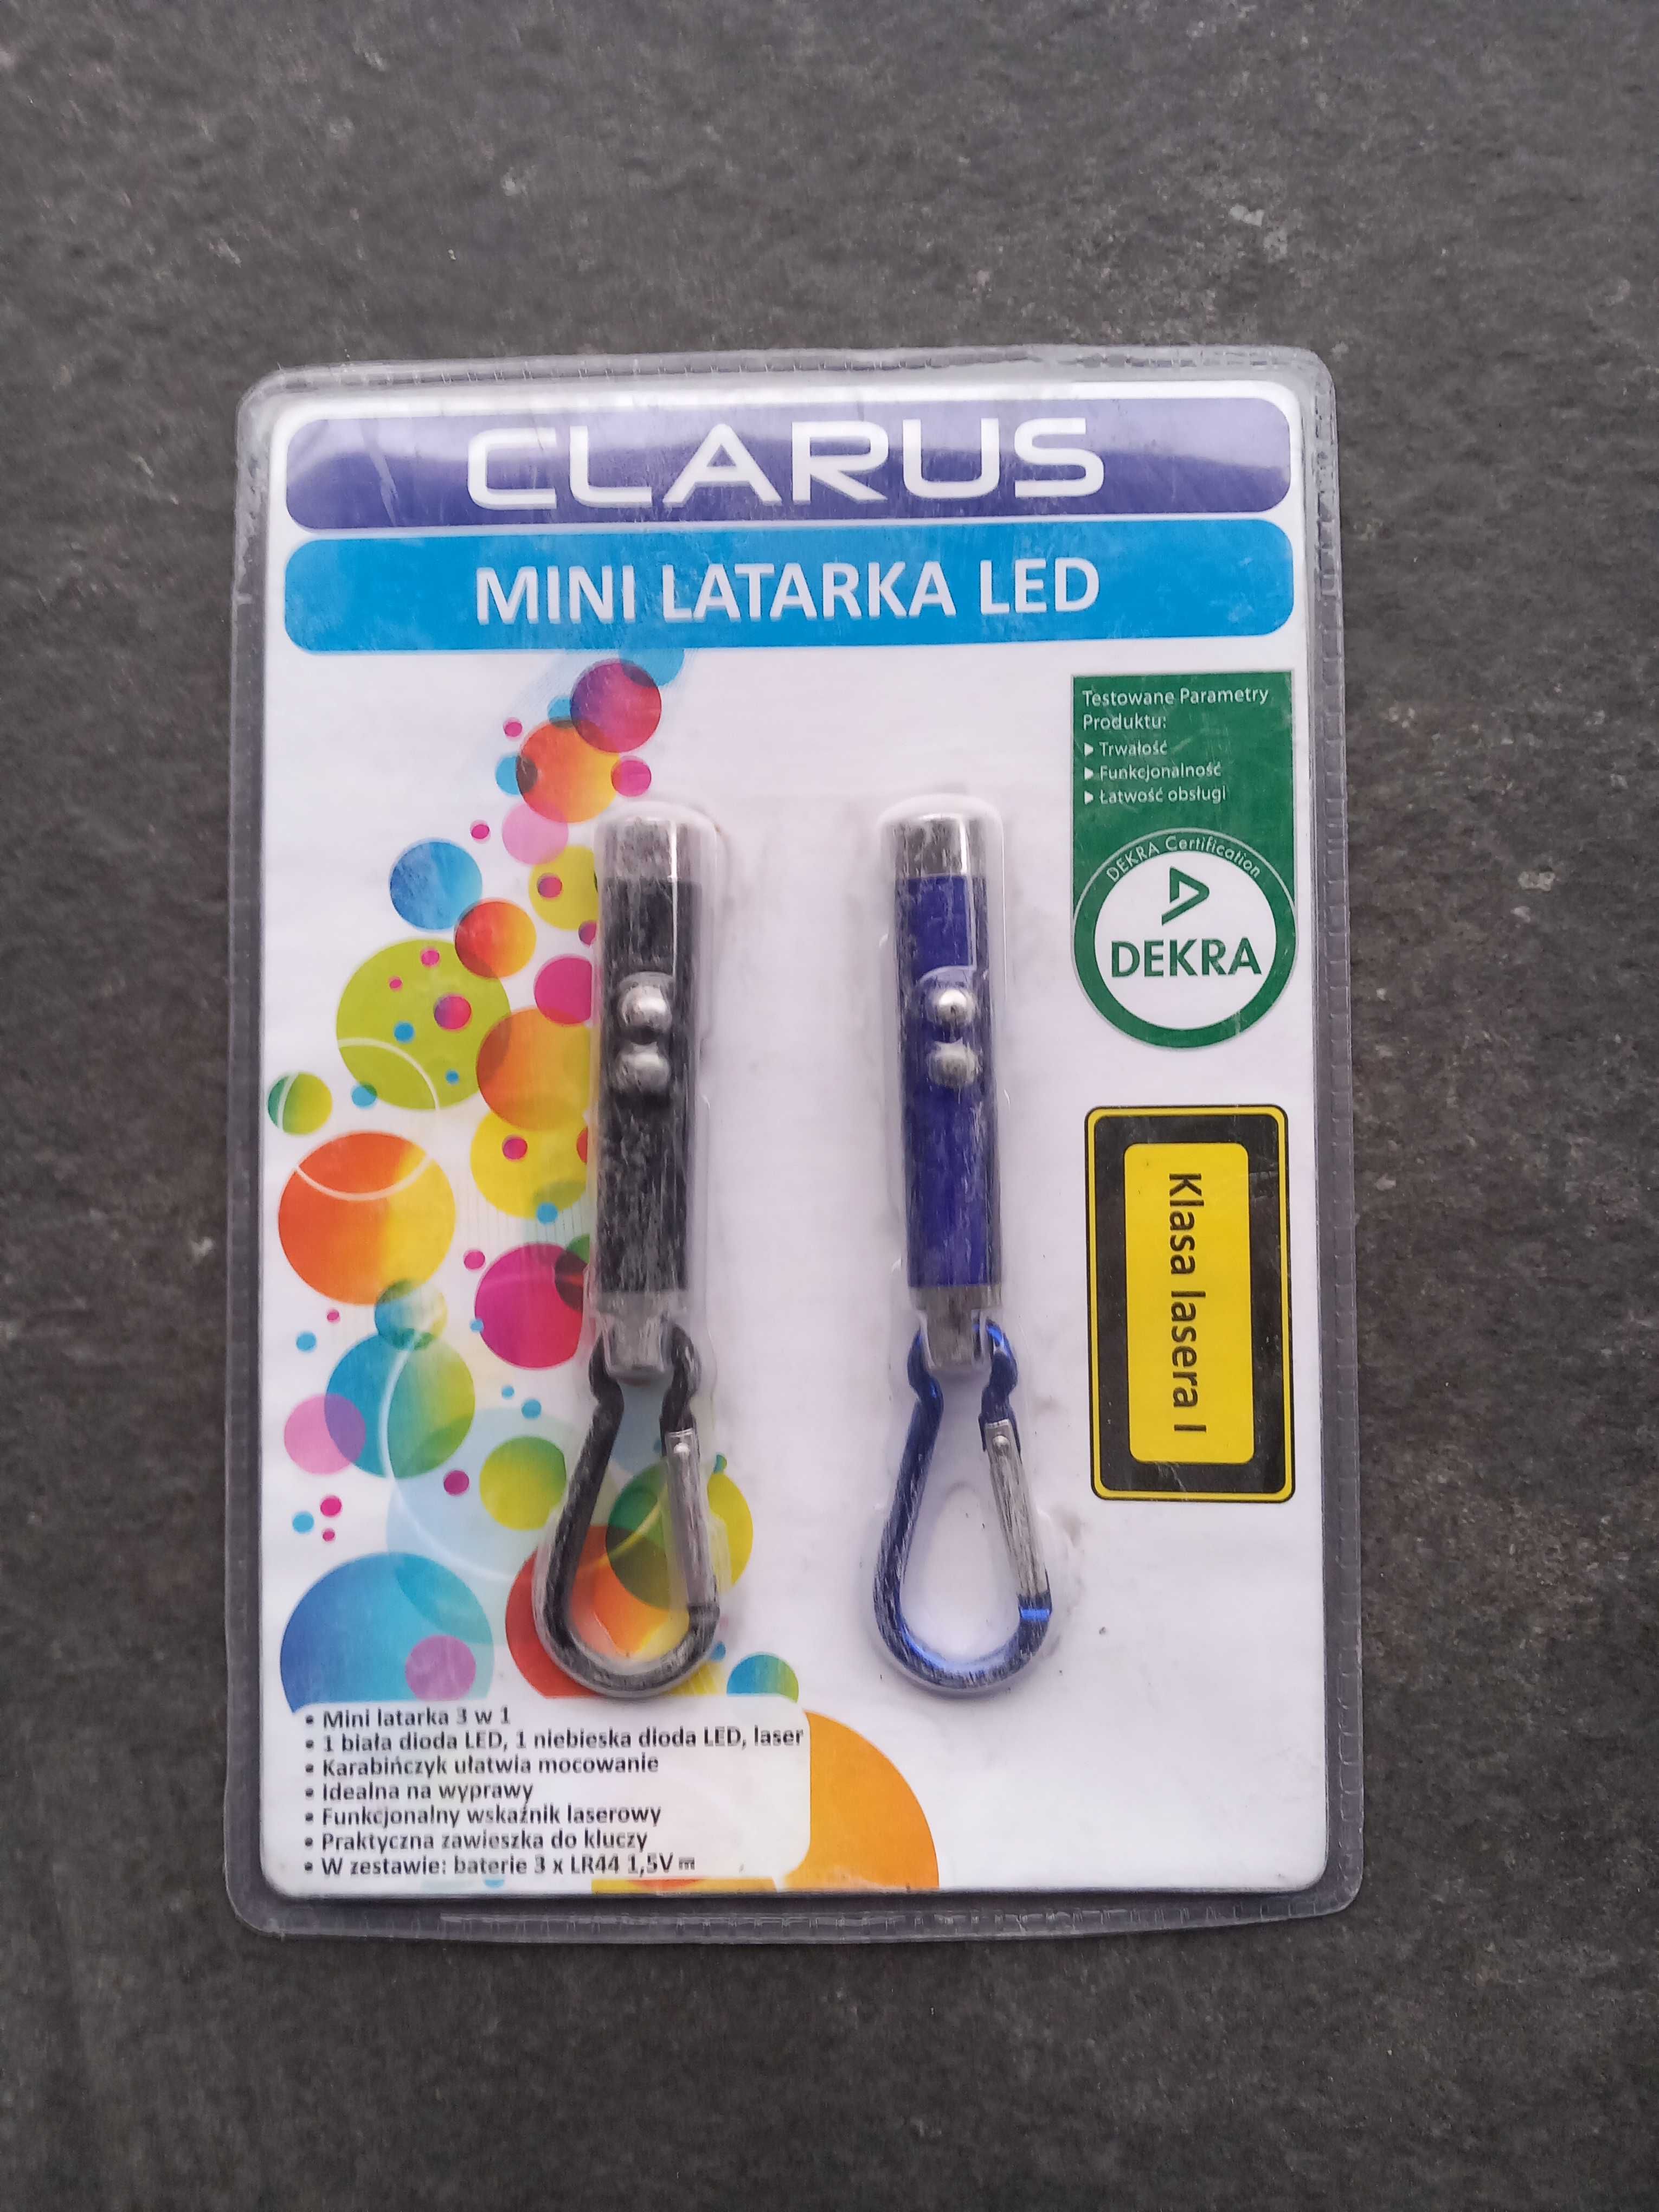 Sprzedam nowe zapakowane mini latarki LED